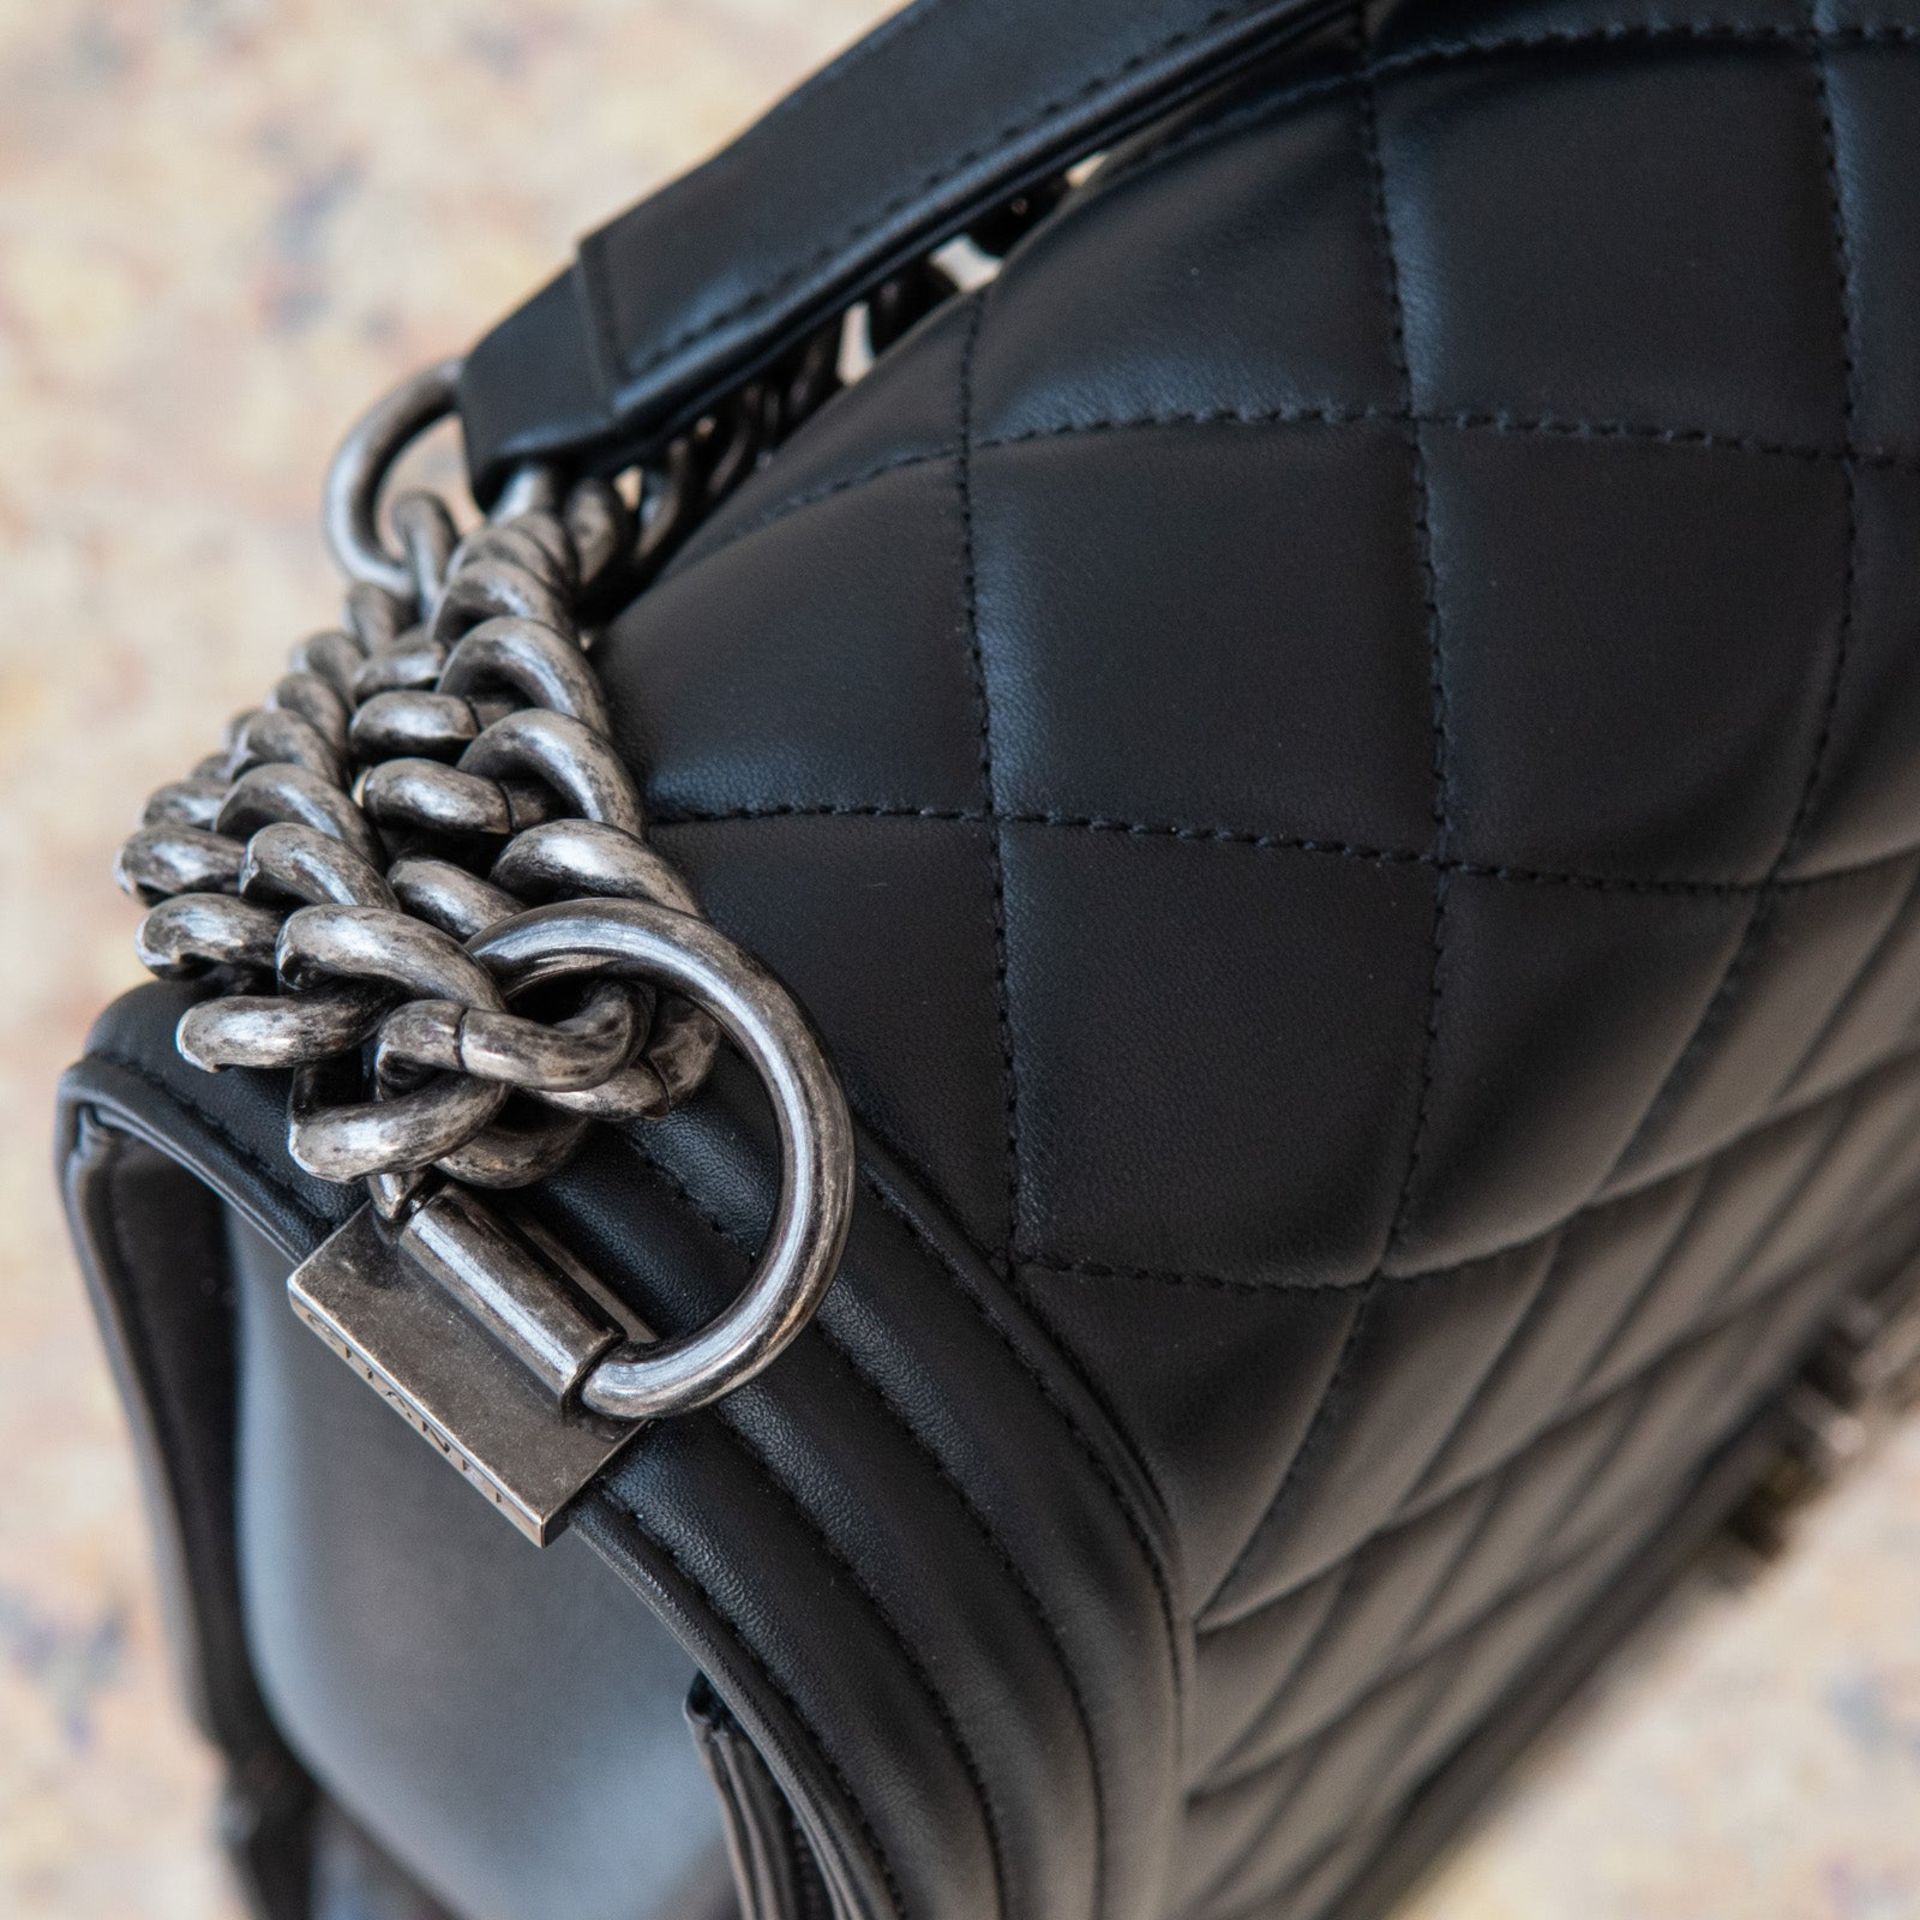 Chanel Black Jumbo Boy Bag - Image 6 of 9